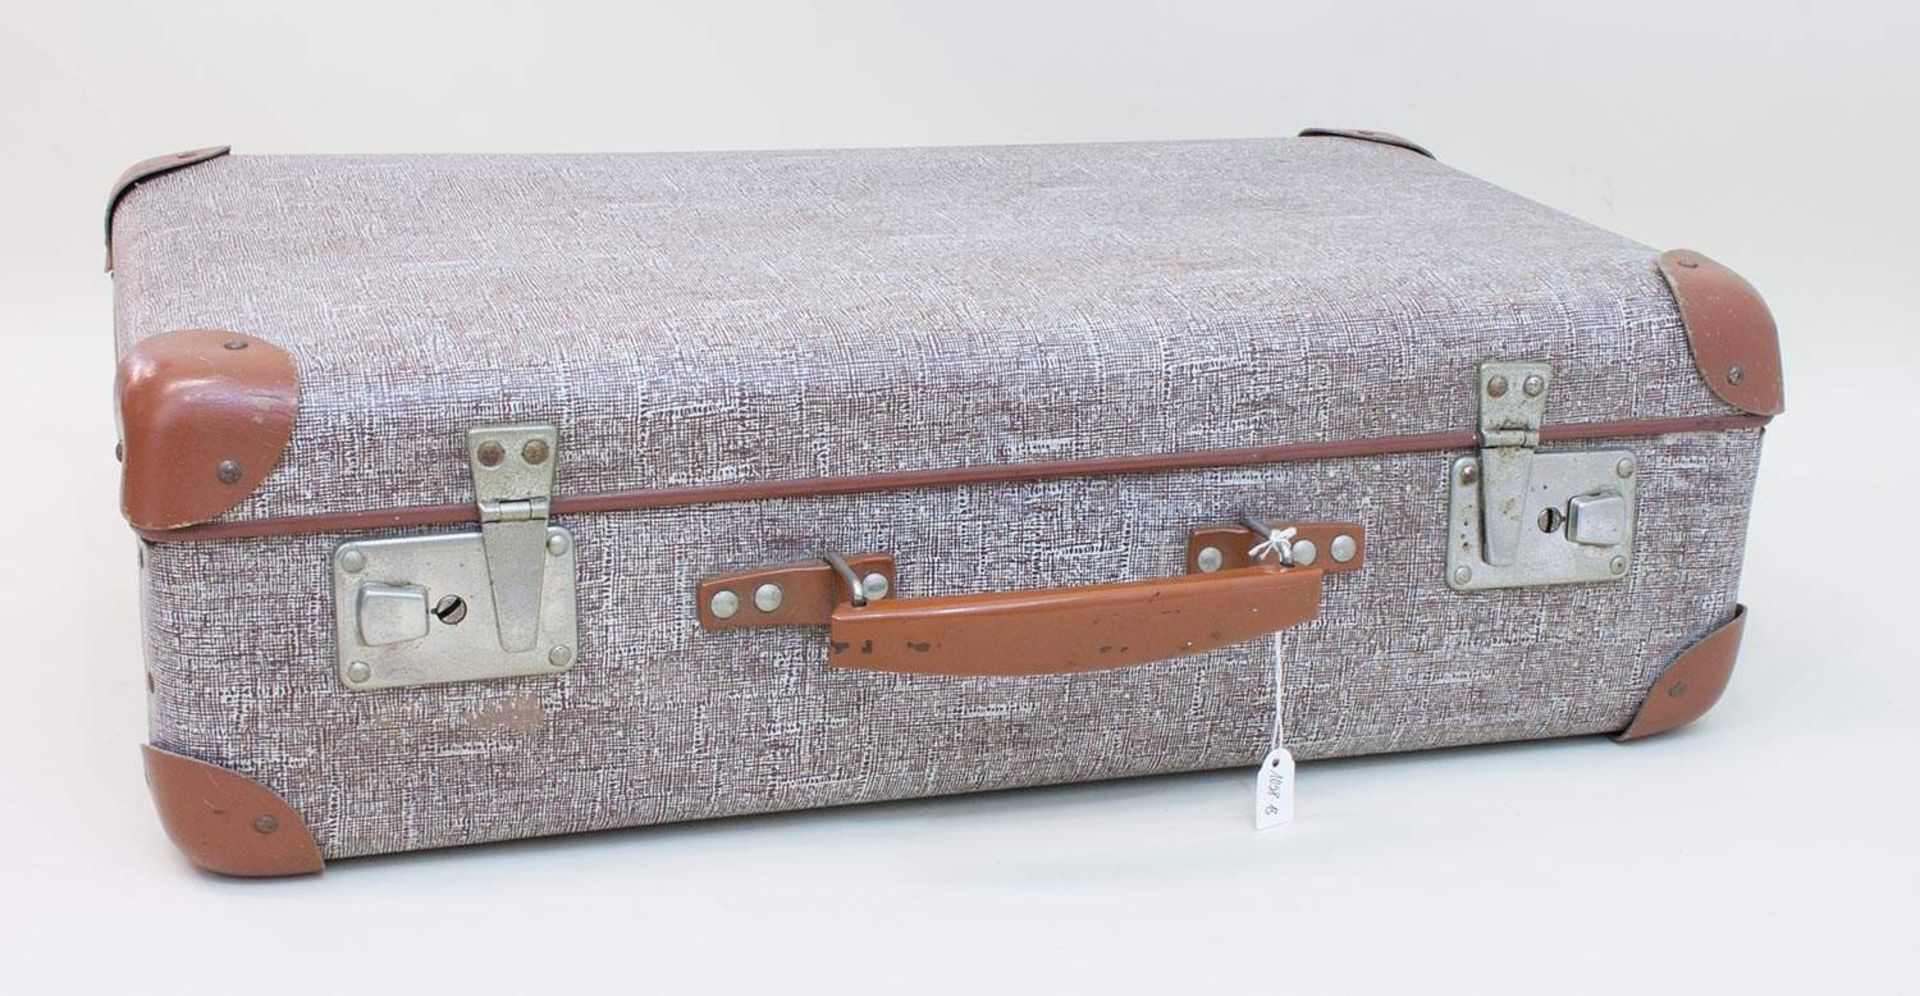 Reisekoffer1950, Schnappverschluss, Plastehandgriff, der Zeit angepasstes Design mit